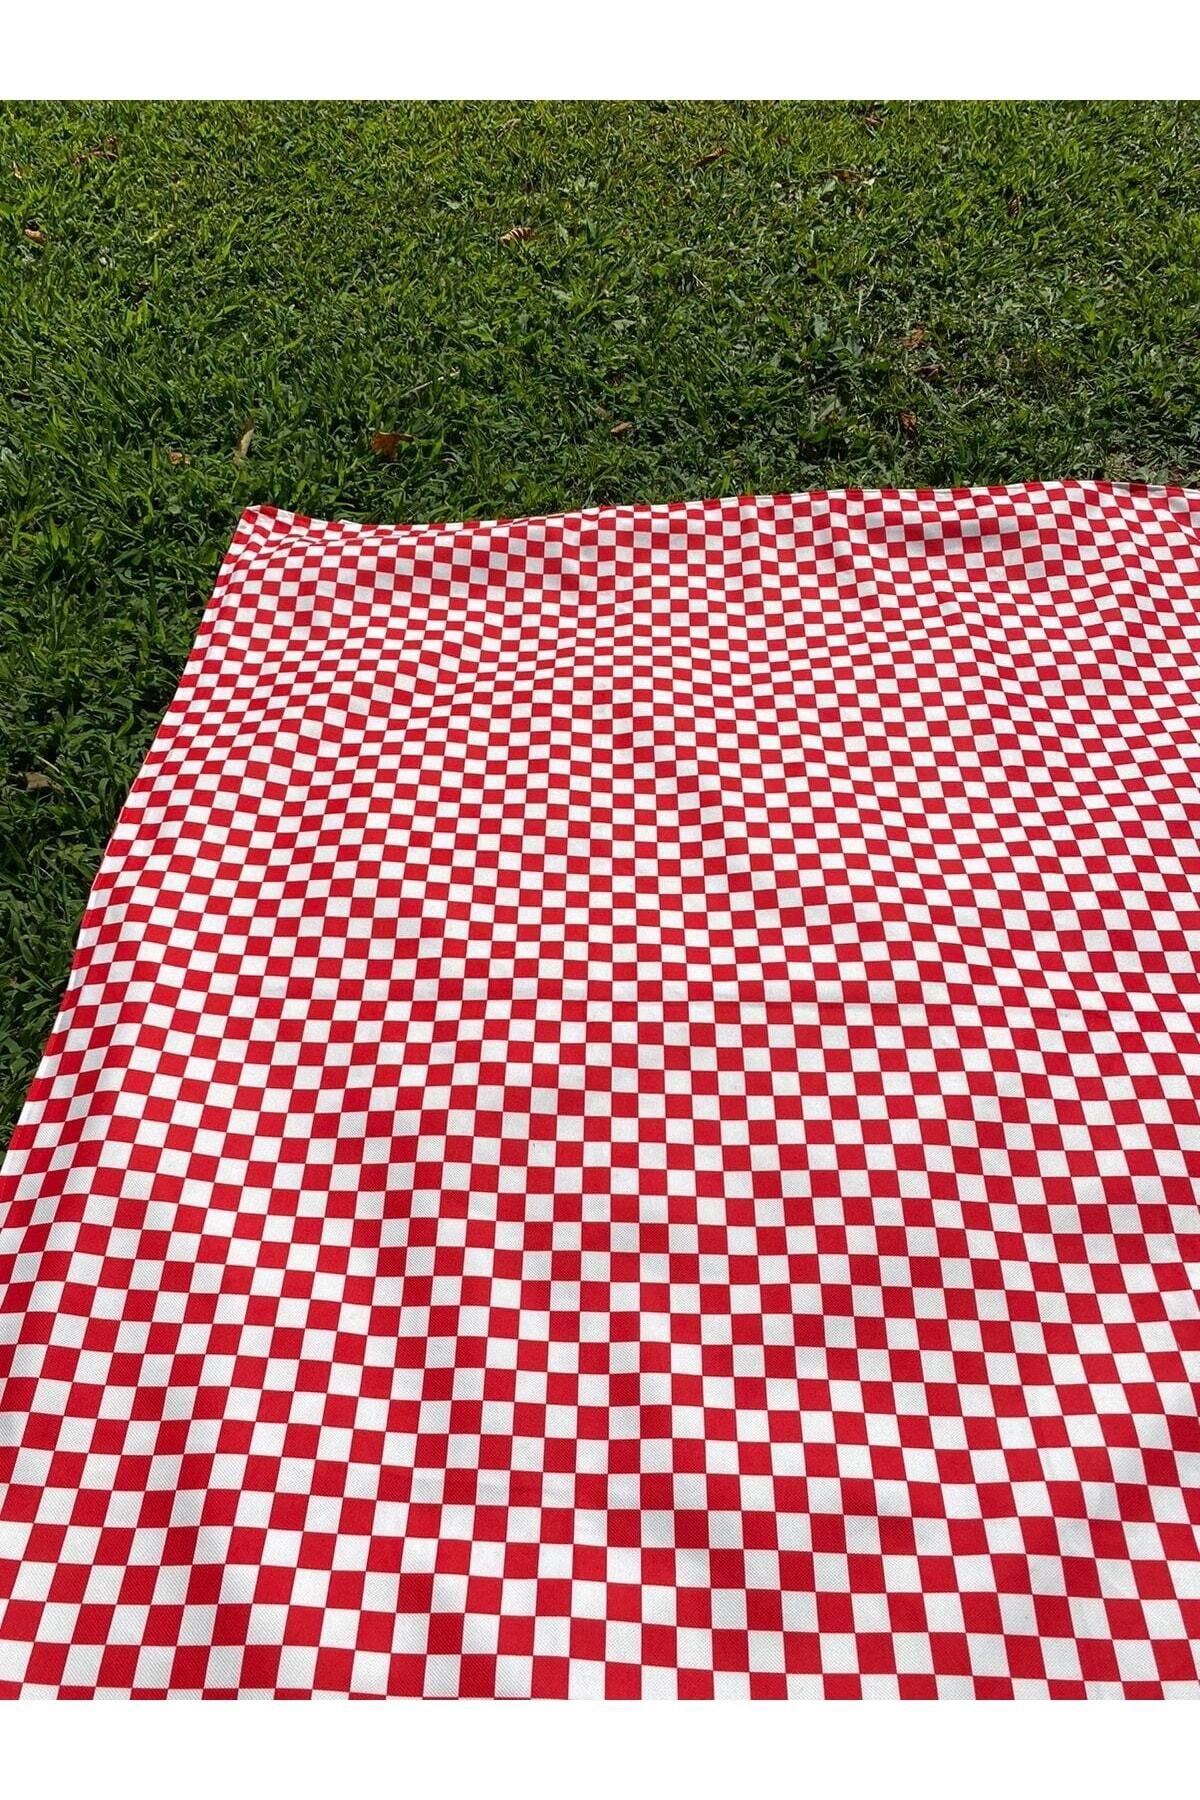 Morning Person Plaj Piknik Kamp Için Su Geçirmez Örtü 140x170cm Kırmızı Beyaz